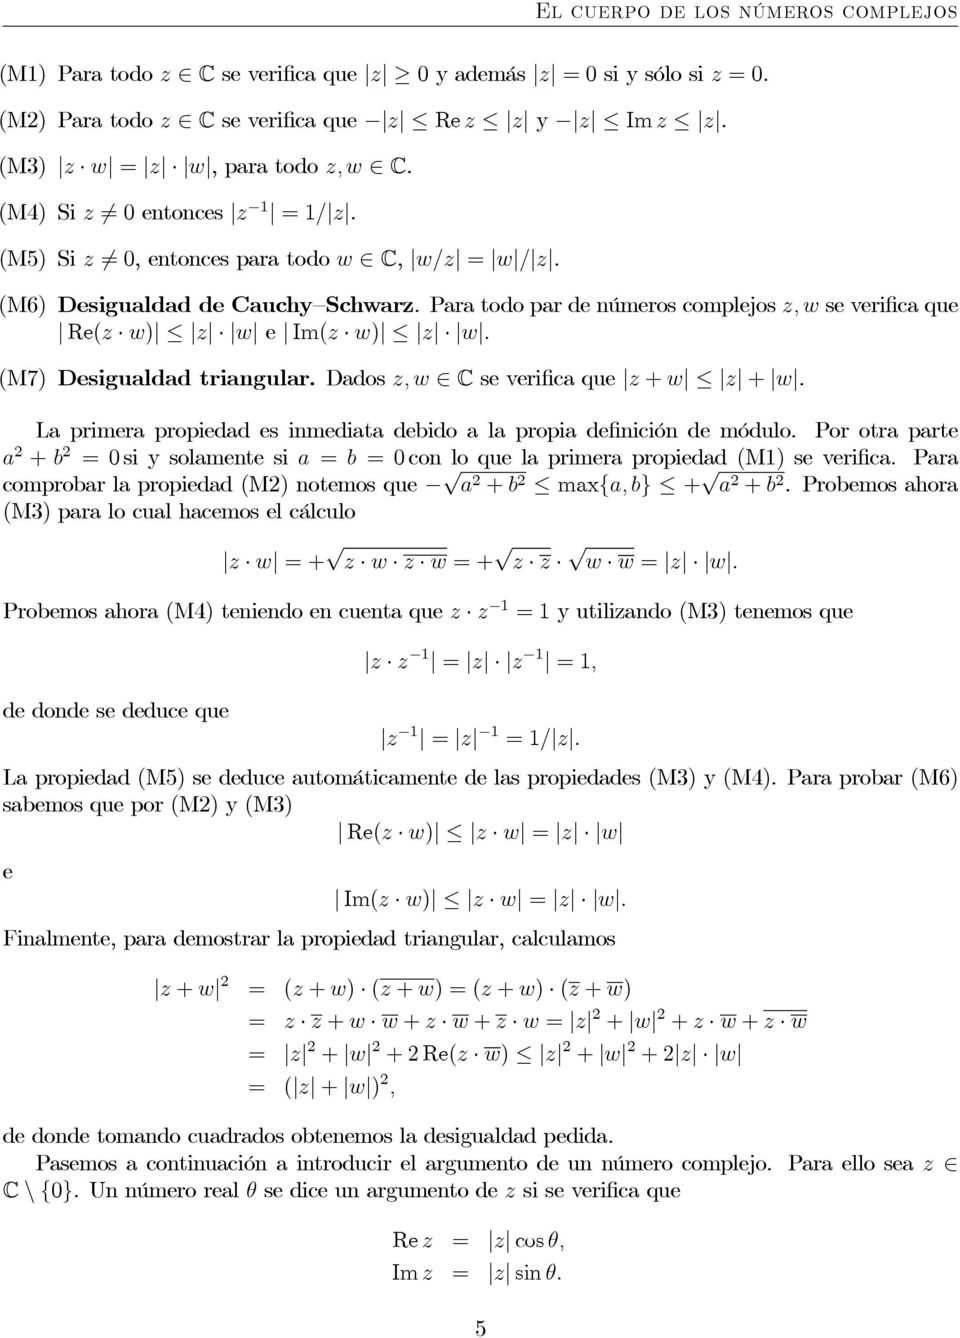 (M7) Desigualdad triangular. Dados z,w C se verifica que z + w z + w. Laprimerapropiedadesinmediata debidoalapropiadefinición de módulo.